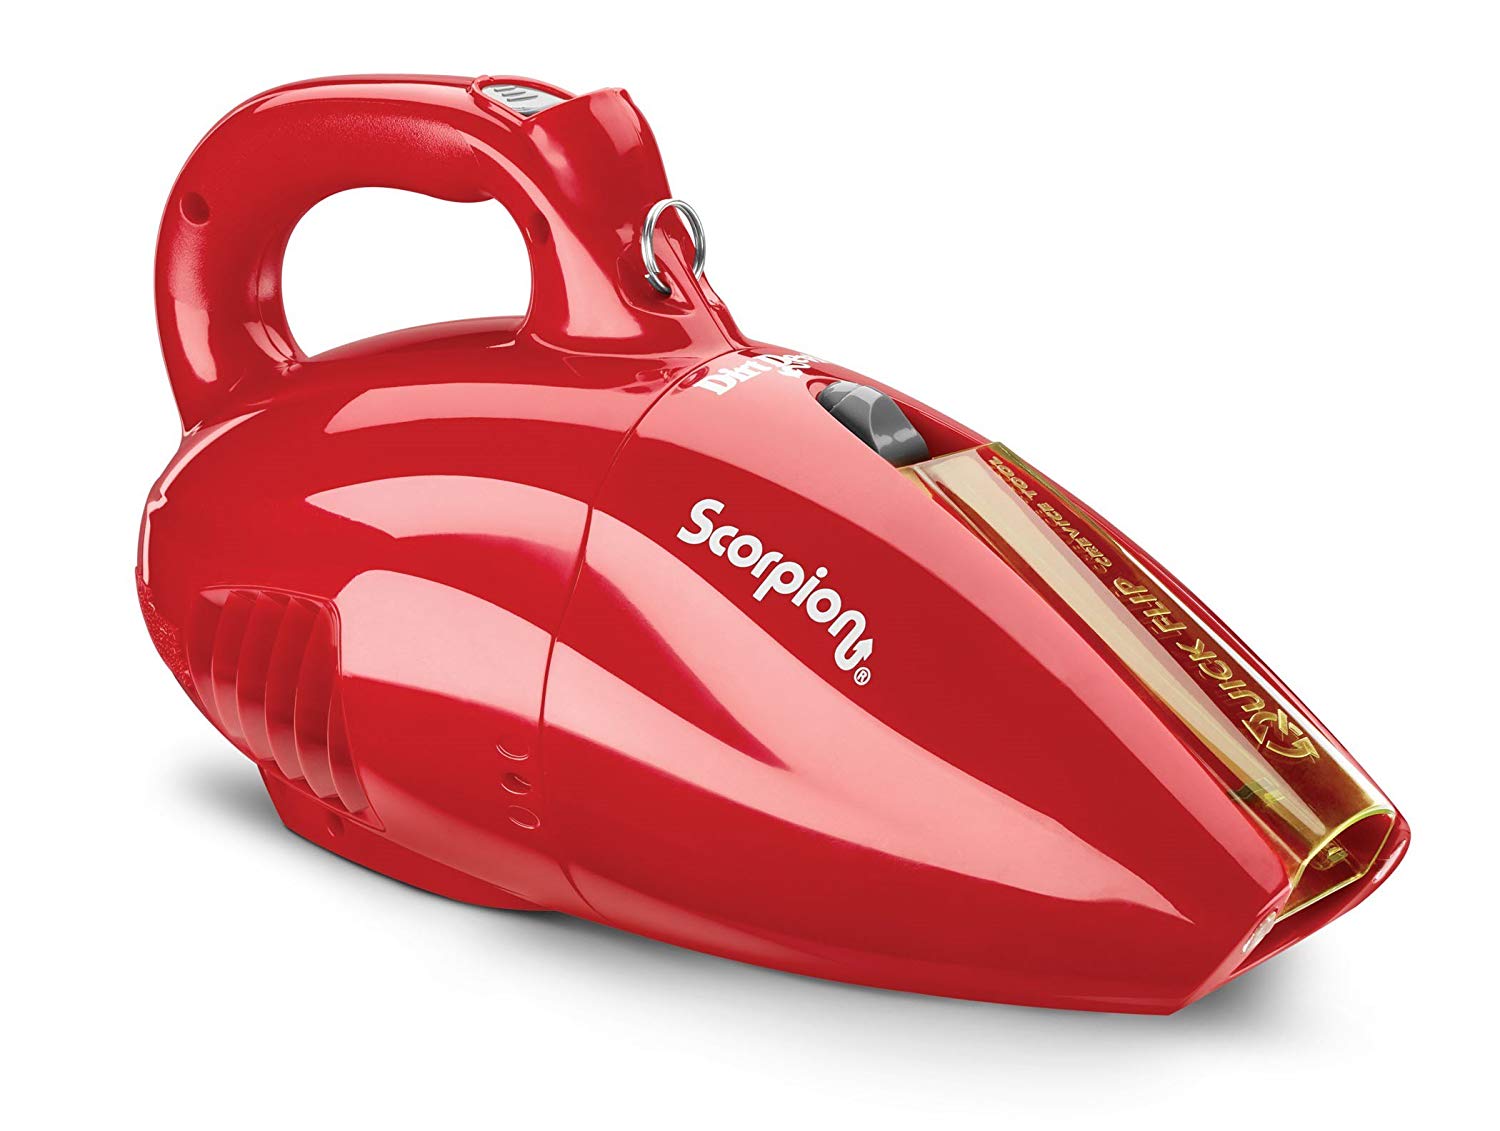 Scorpion Handheld Vacuum